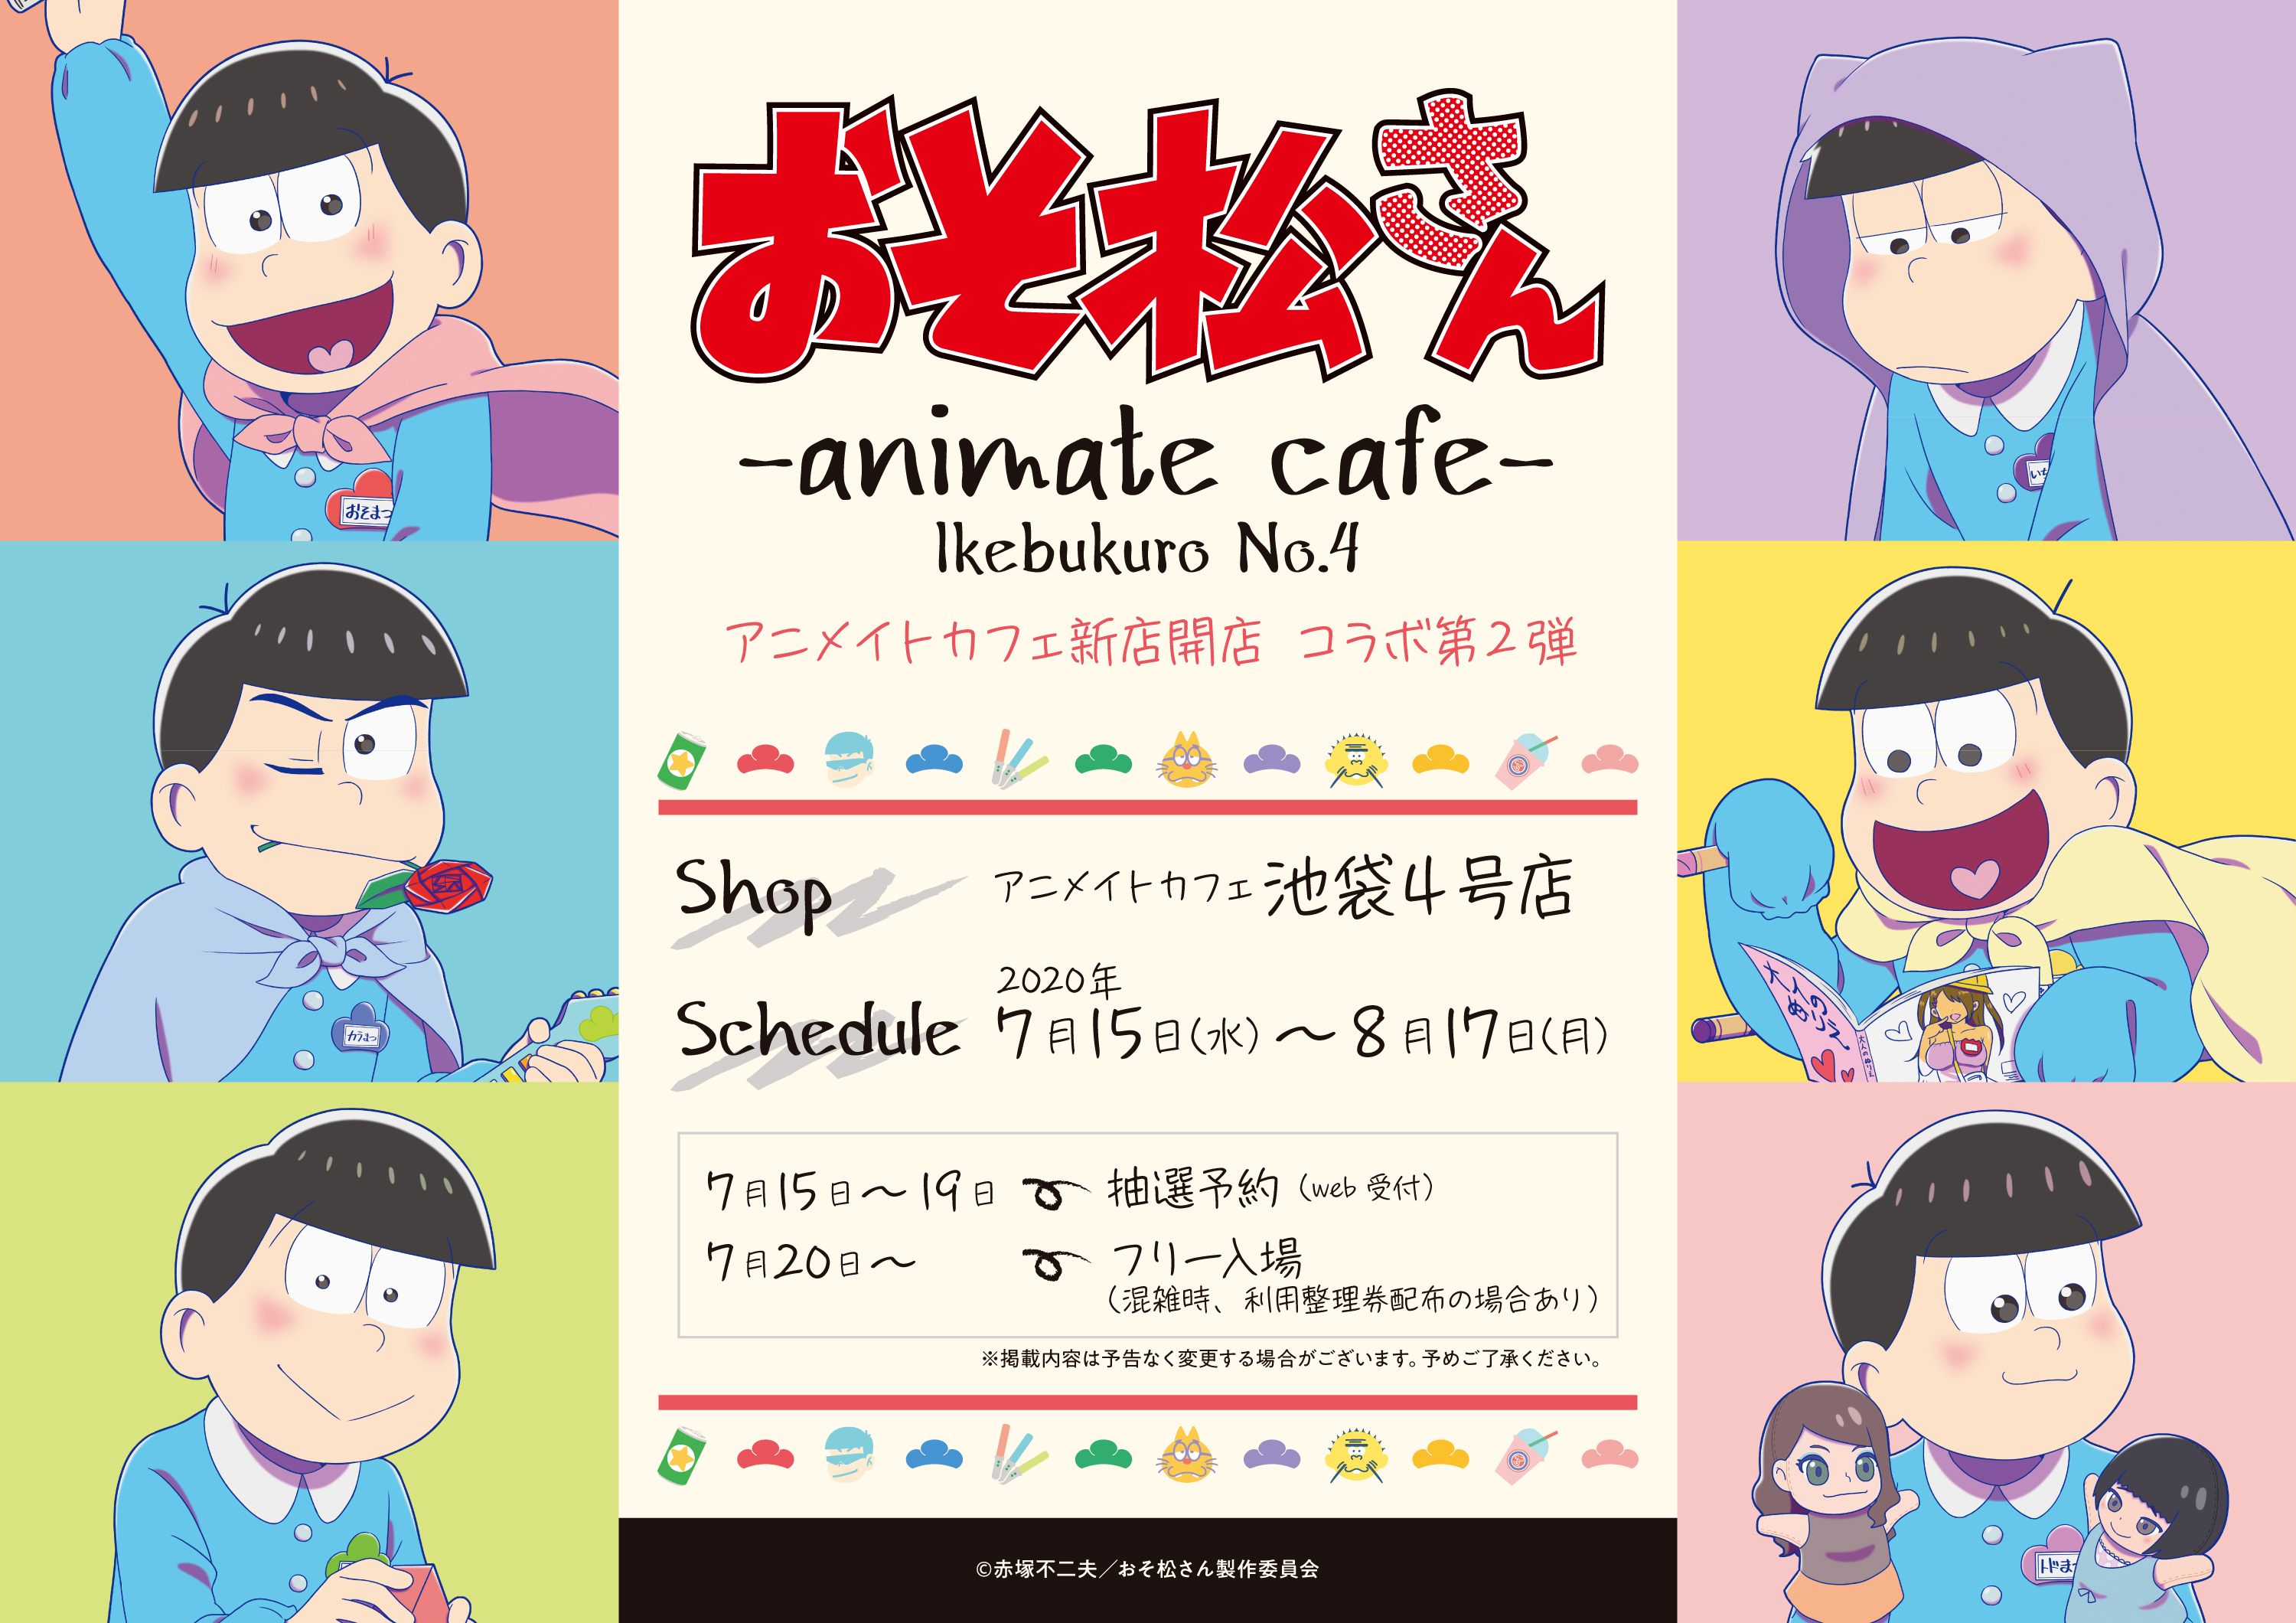 Tvアニメ おそ松さん とアニメイトカフェのコラボレーションカフェ決定 アニメイトカフェ池袋4号店で7月15日より開催 株式会社アニメイト ホールディングスのプレスリリース